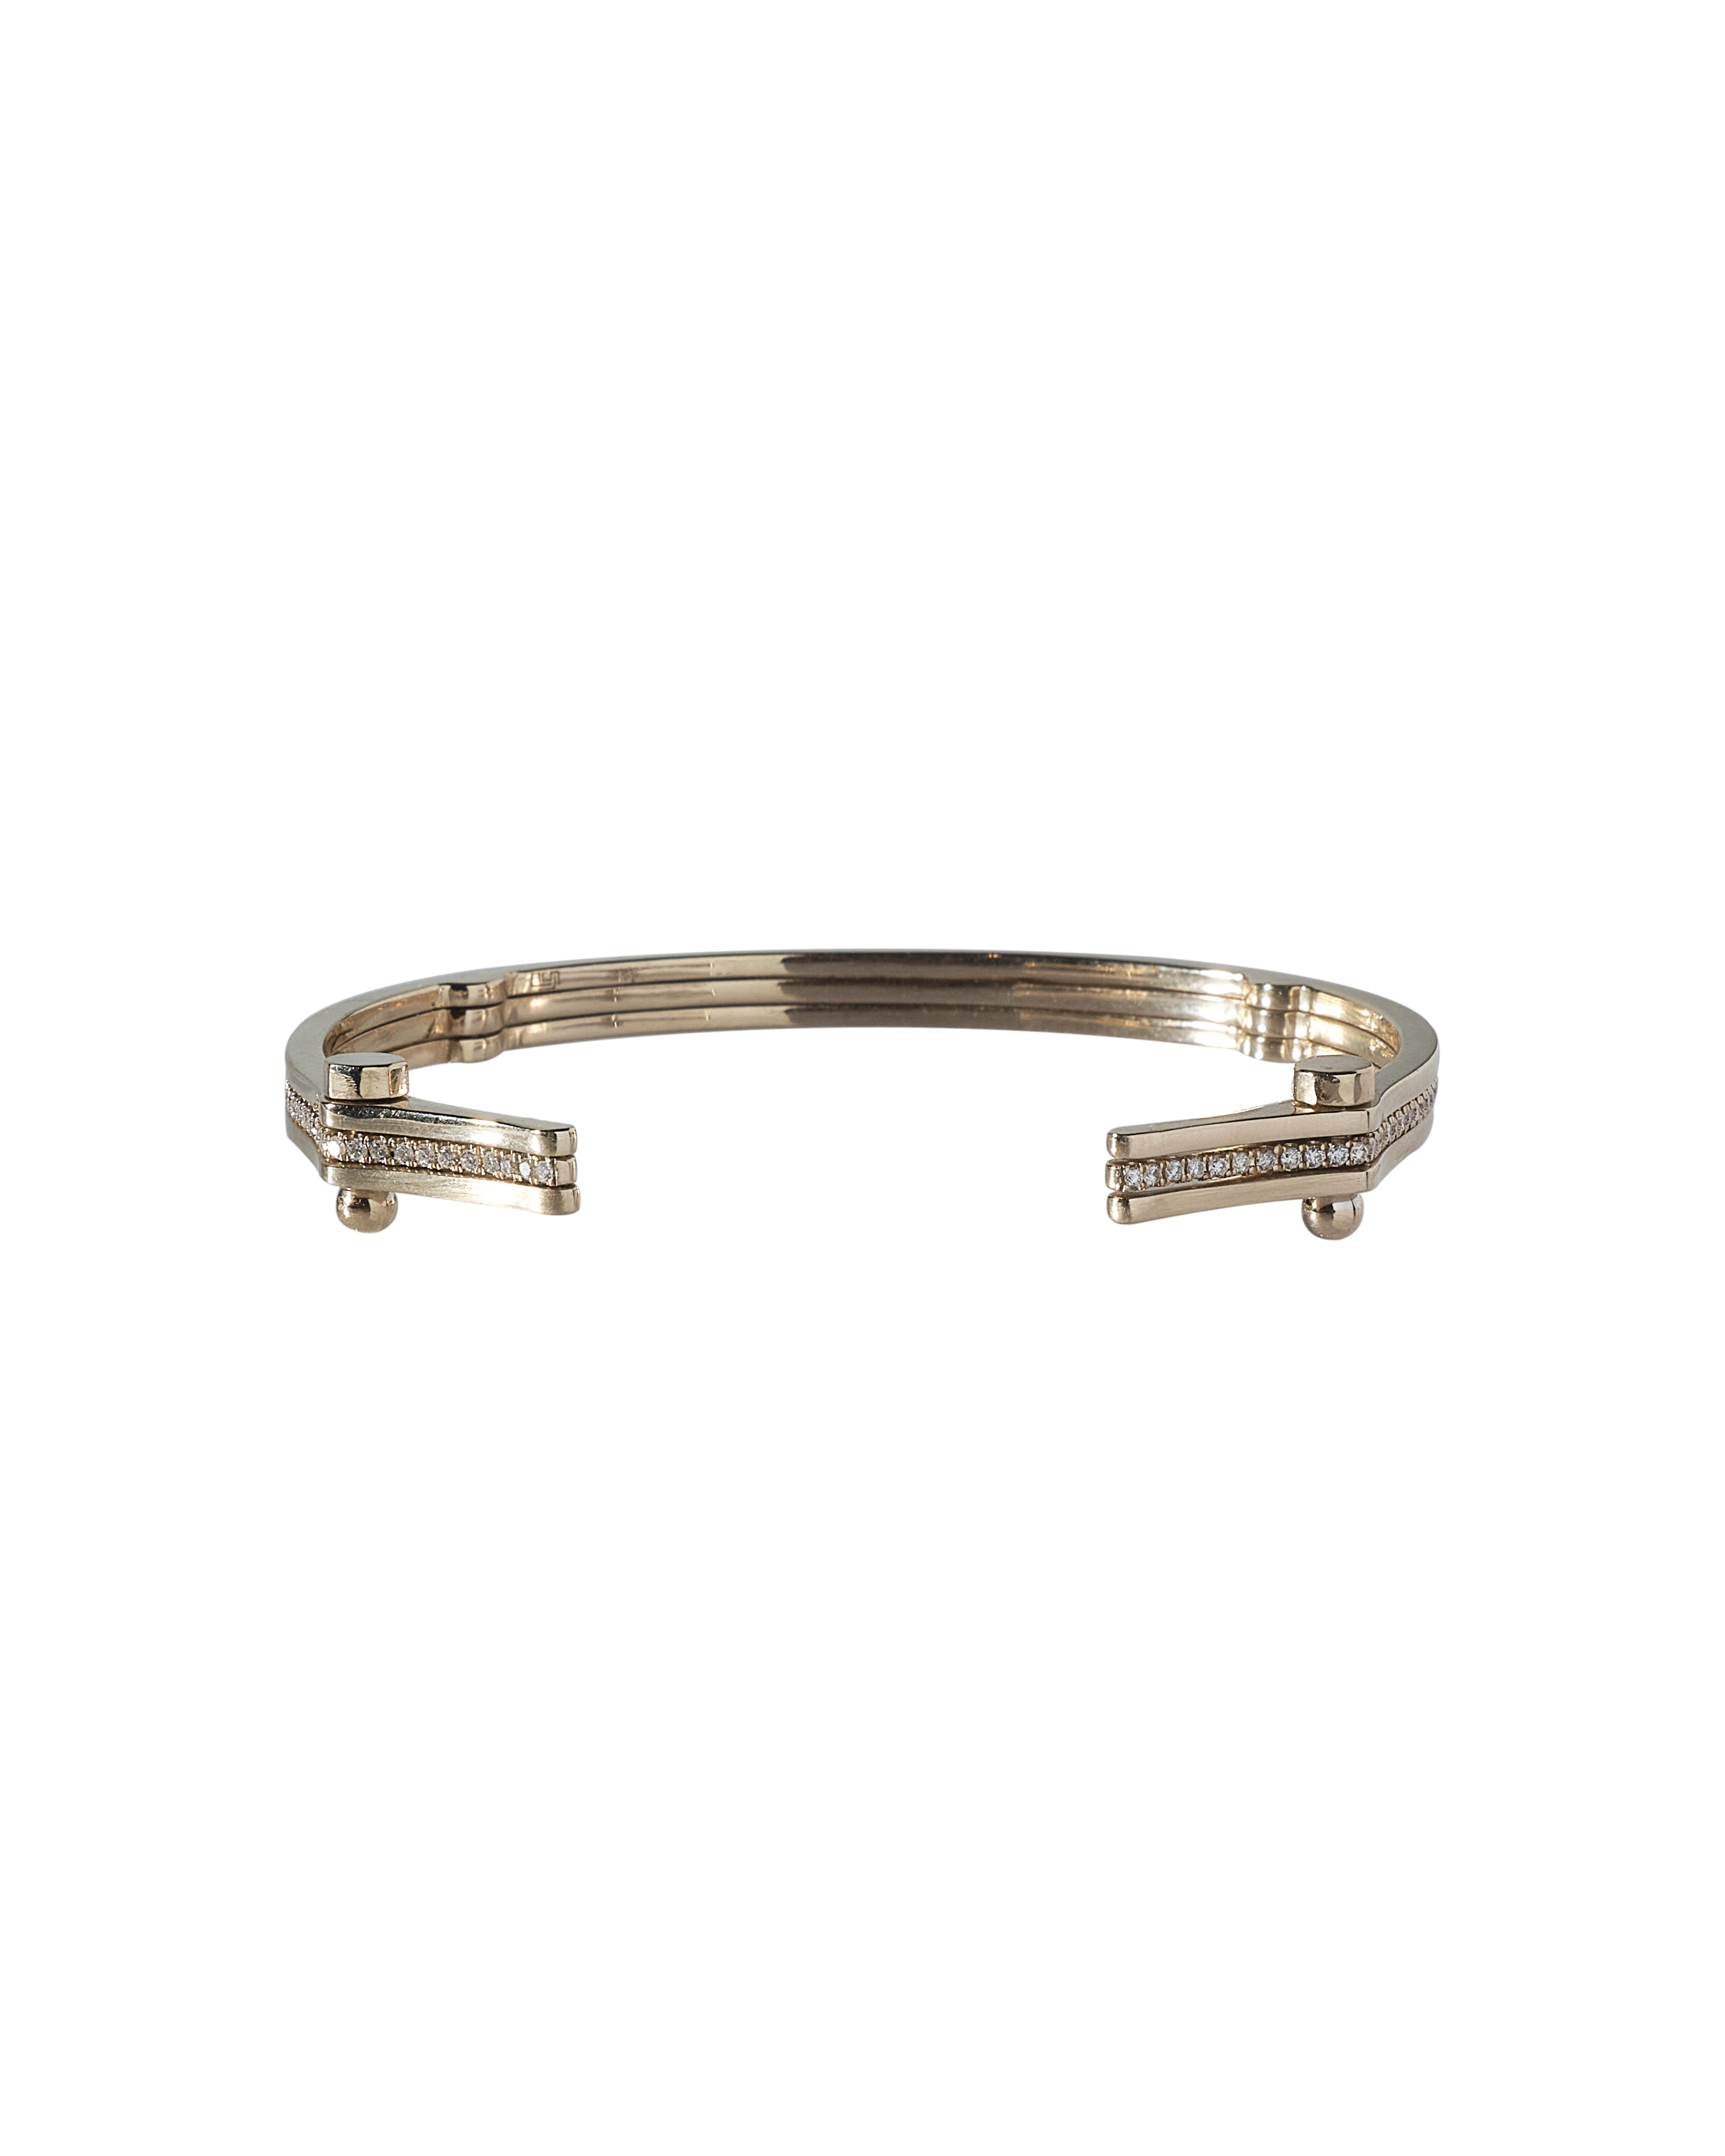 Ce bracelet de la collection SYNDESIS de POLINA ELLIS se compose de trois bandes reliées par des vis. 
Les deux bandes extérieures sont unies avec une finition mate et celle du milieu est entièrement pavée. 
Fabriqué à la main en or blanc brut 18K